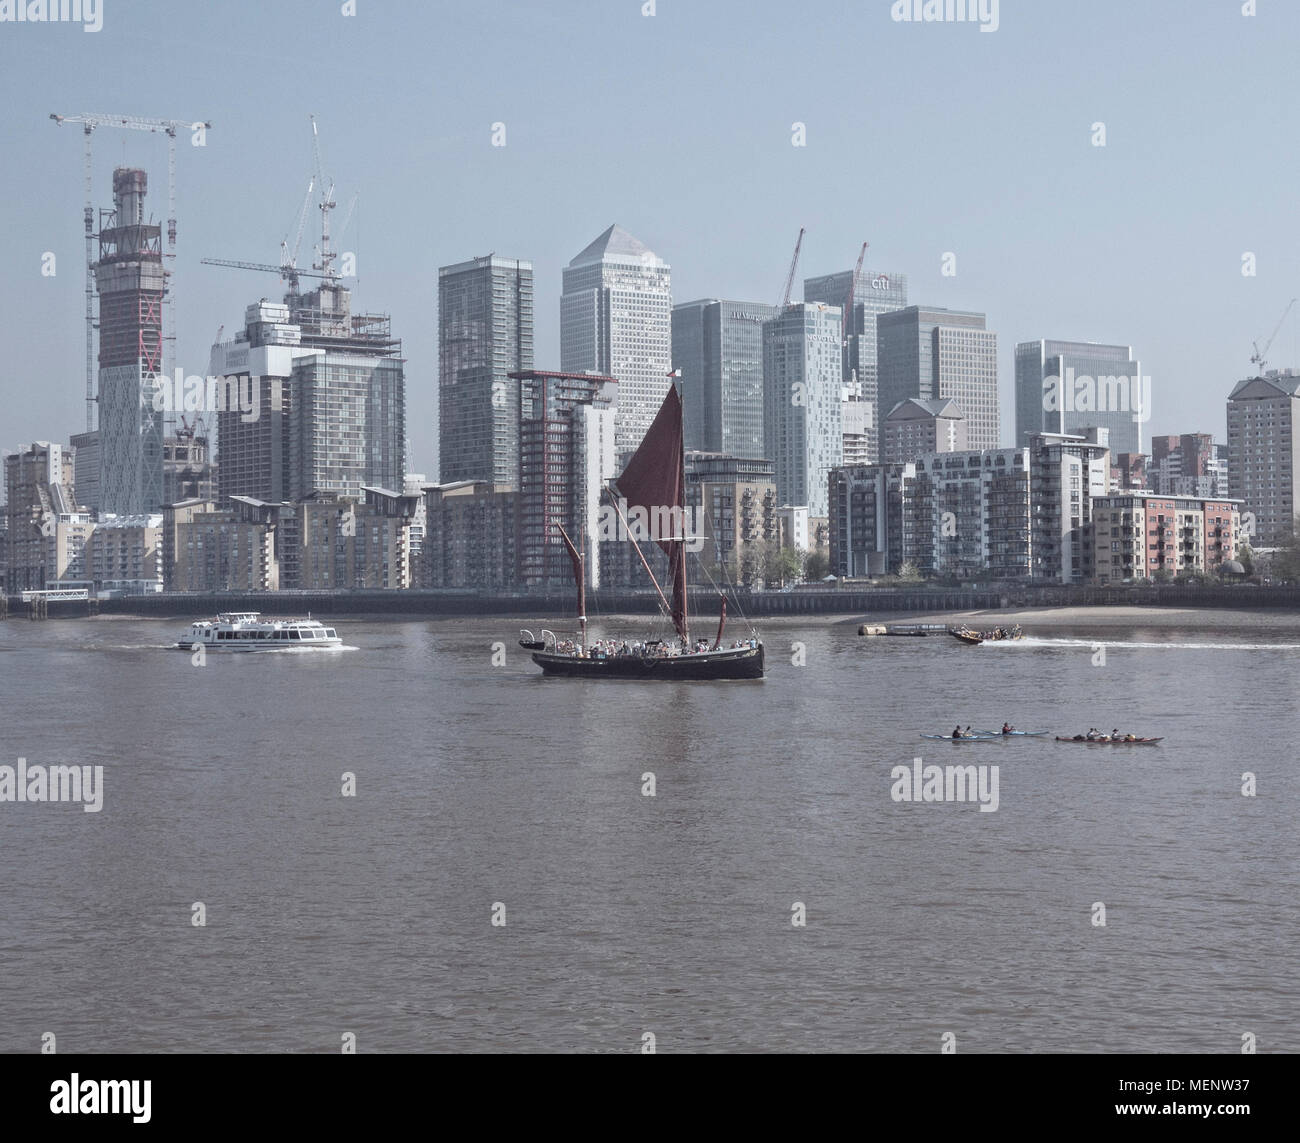 Il Tamigi chiatta passato a vela Canary Wharf East London REGNO UNITO Foto Stock